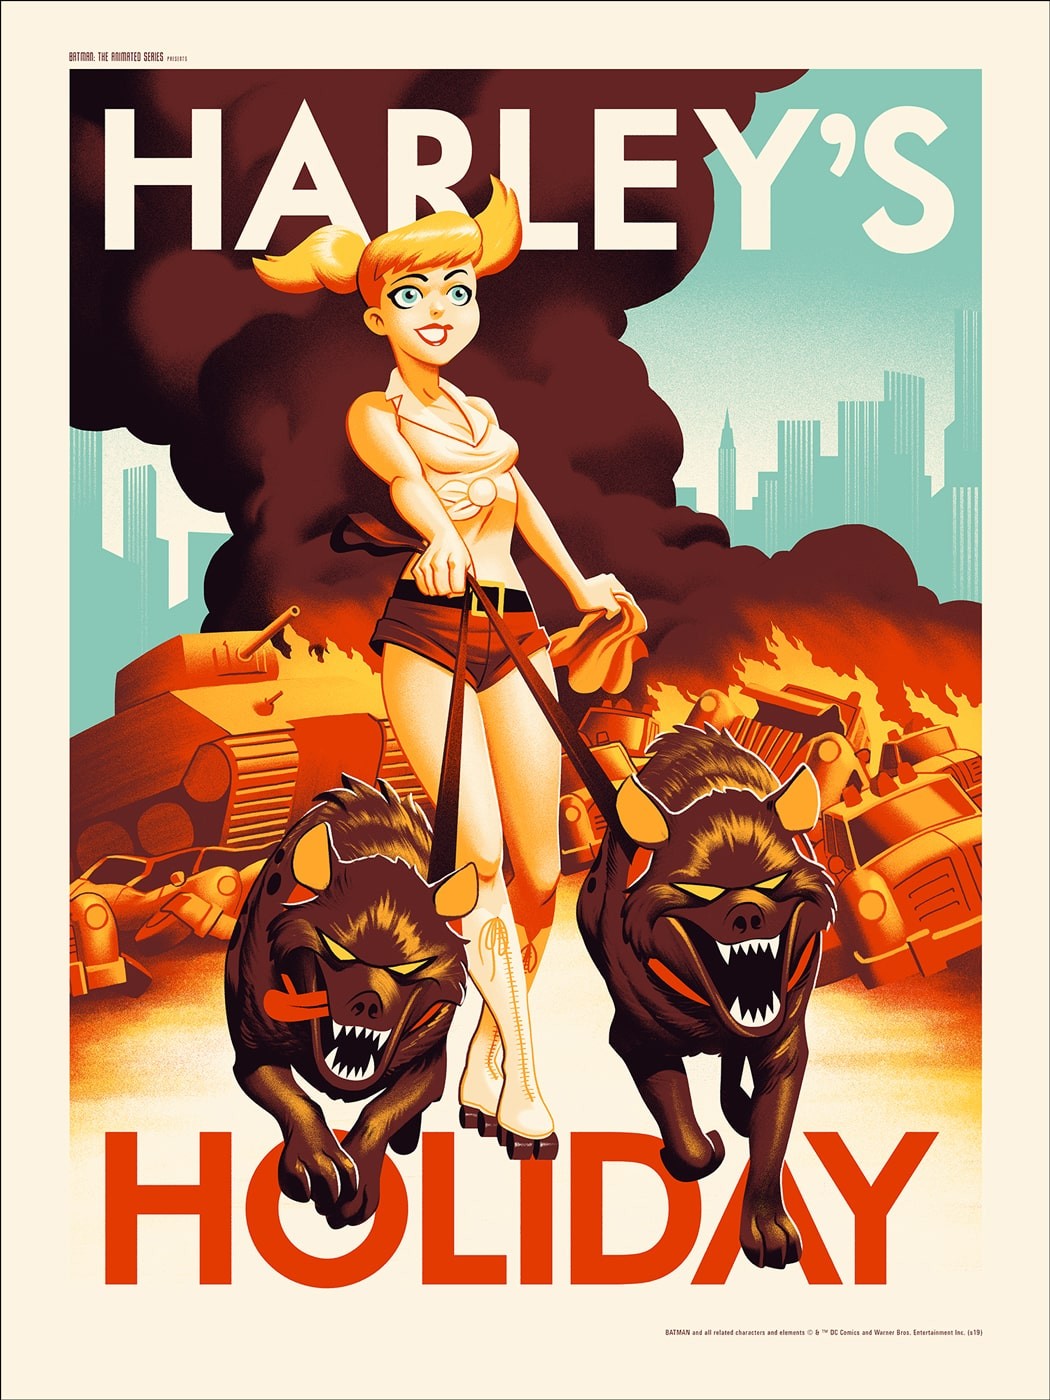 Harleys-Holiday-1-min.jpg